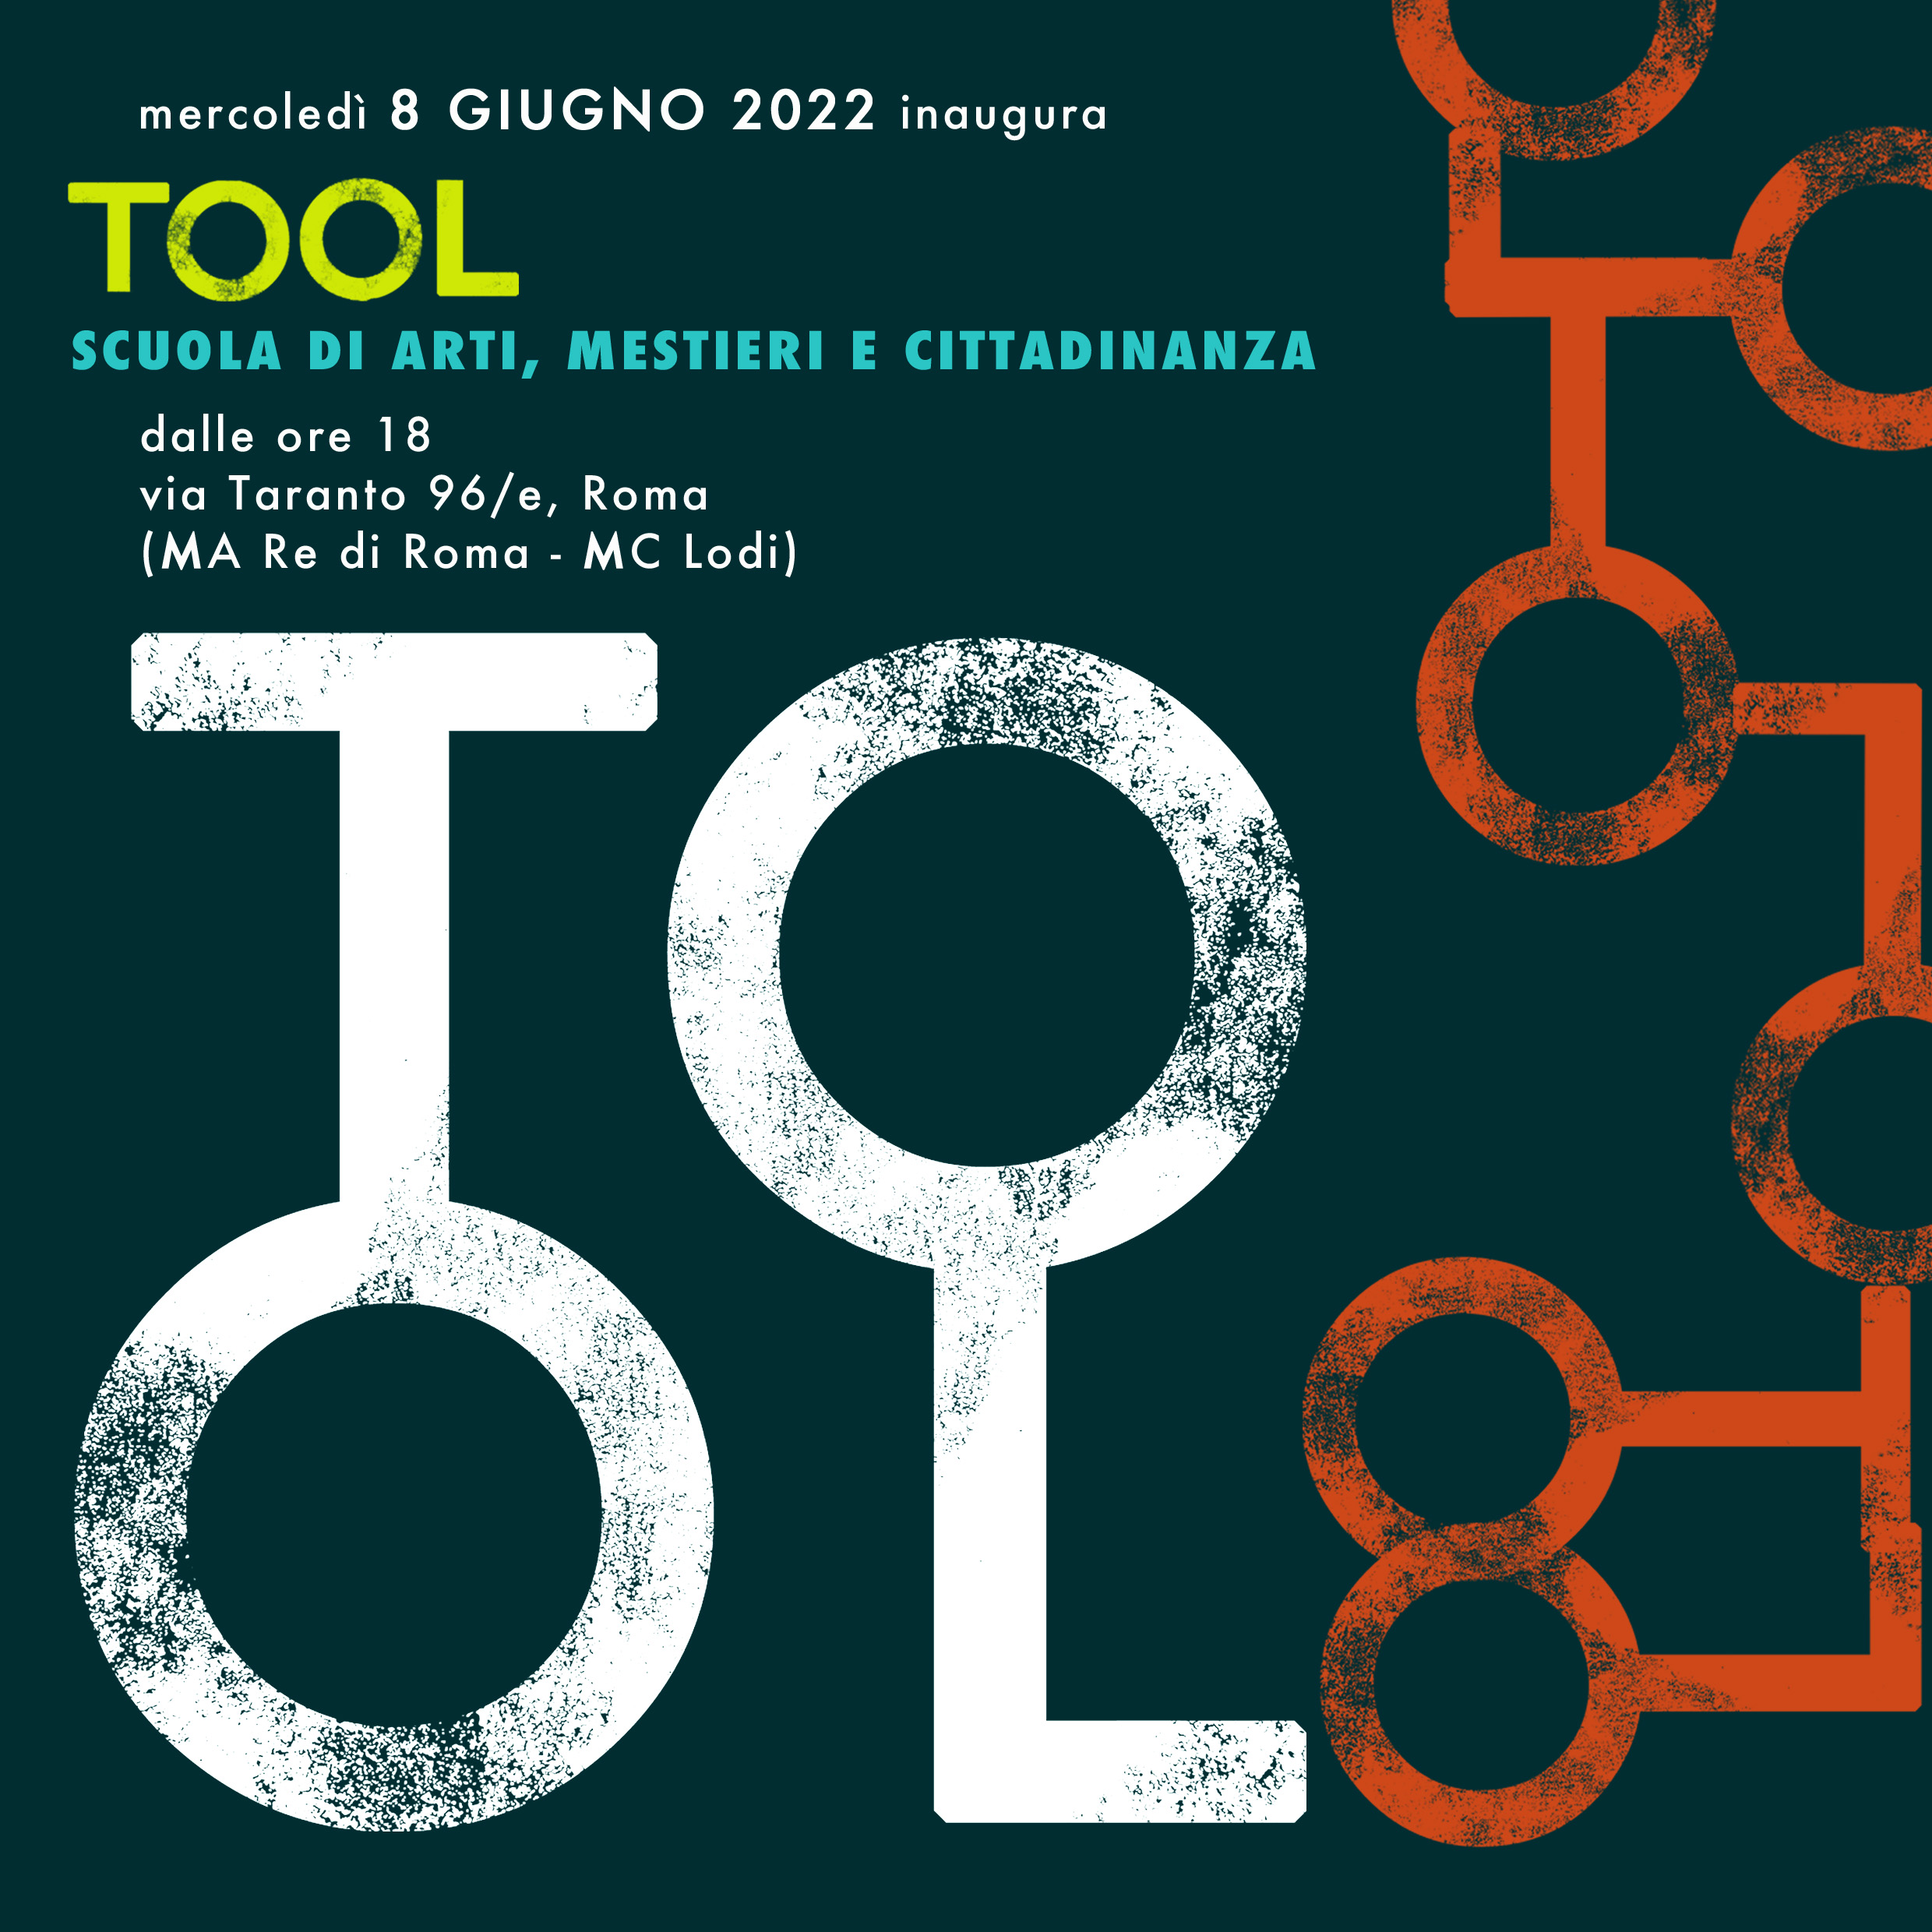 inaugura tool1